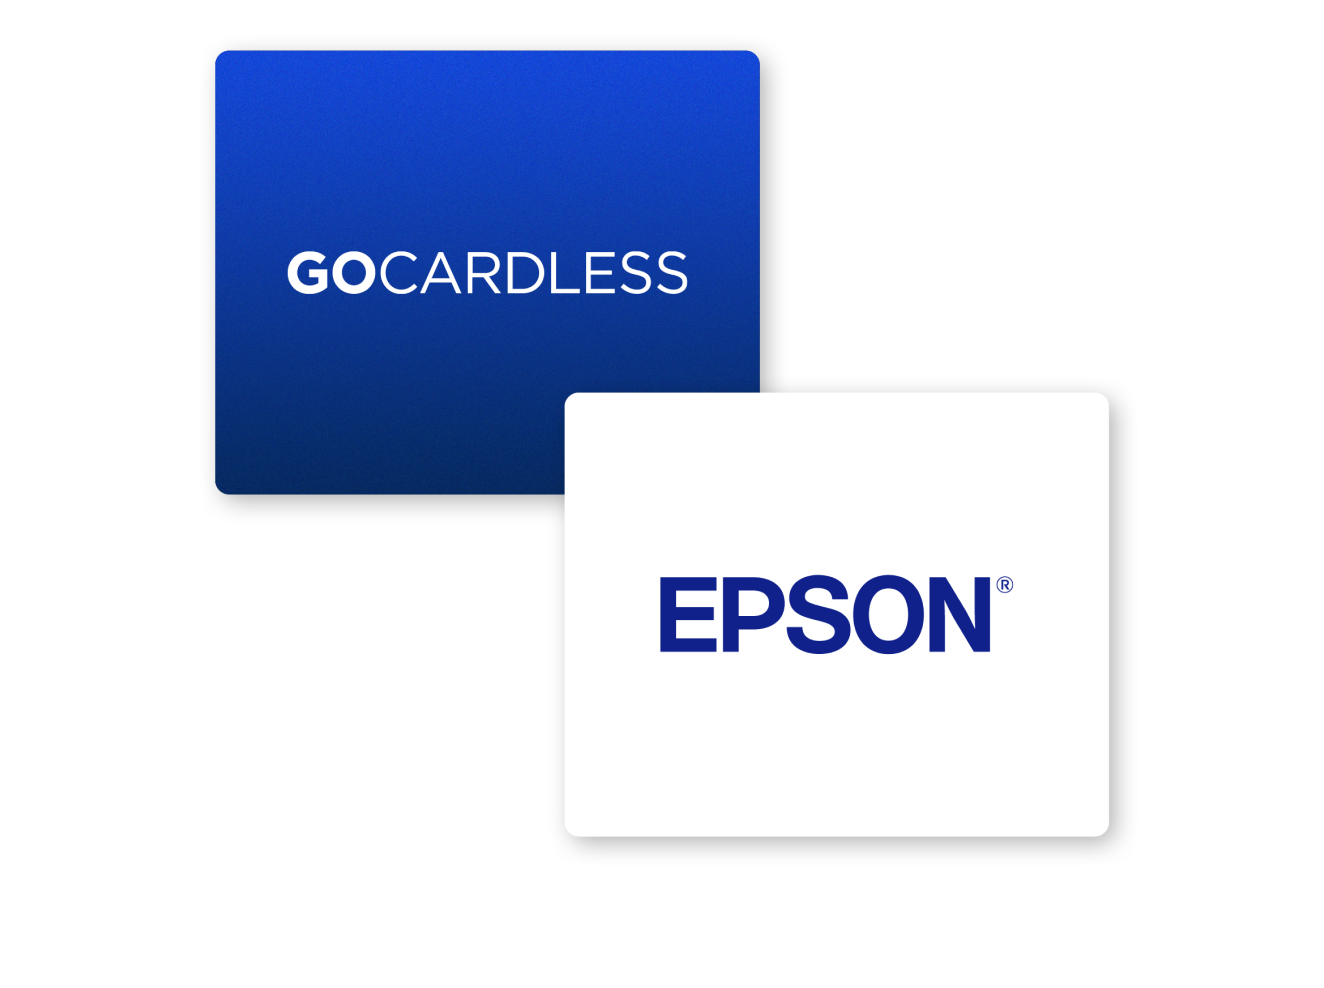 Epson verbessert die Konversion um 80 %